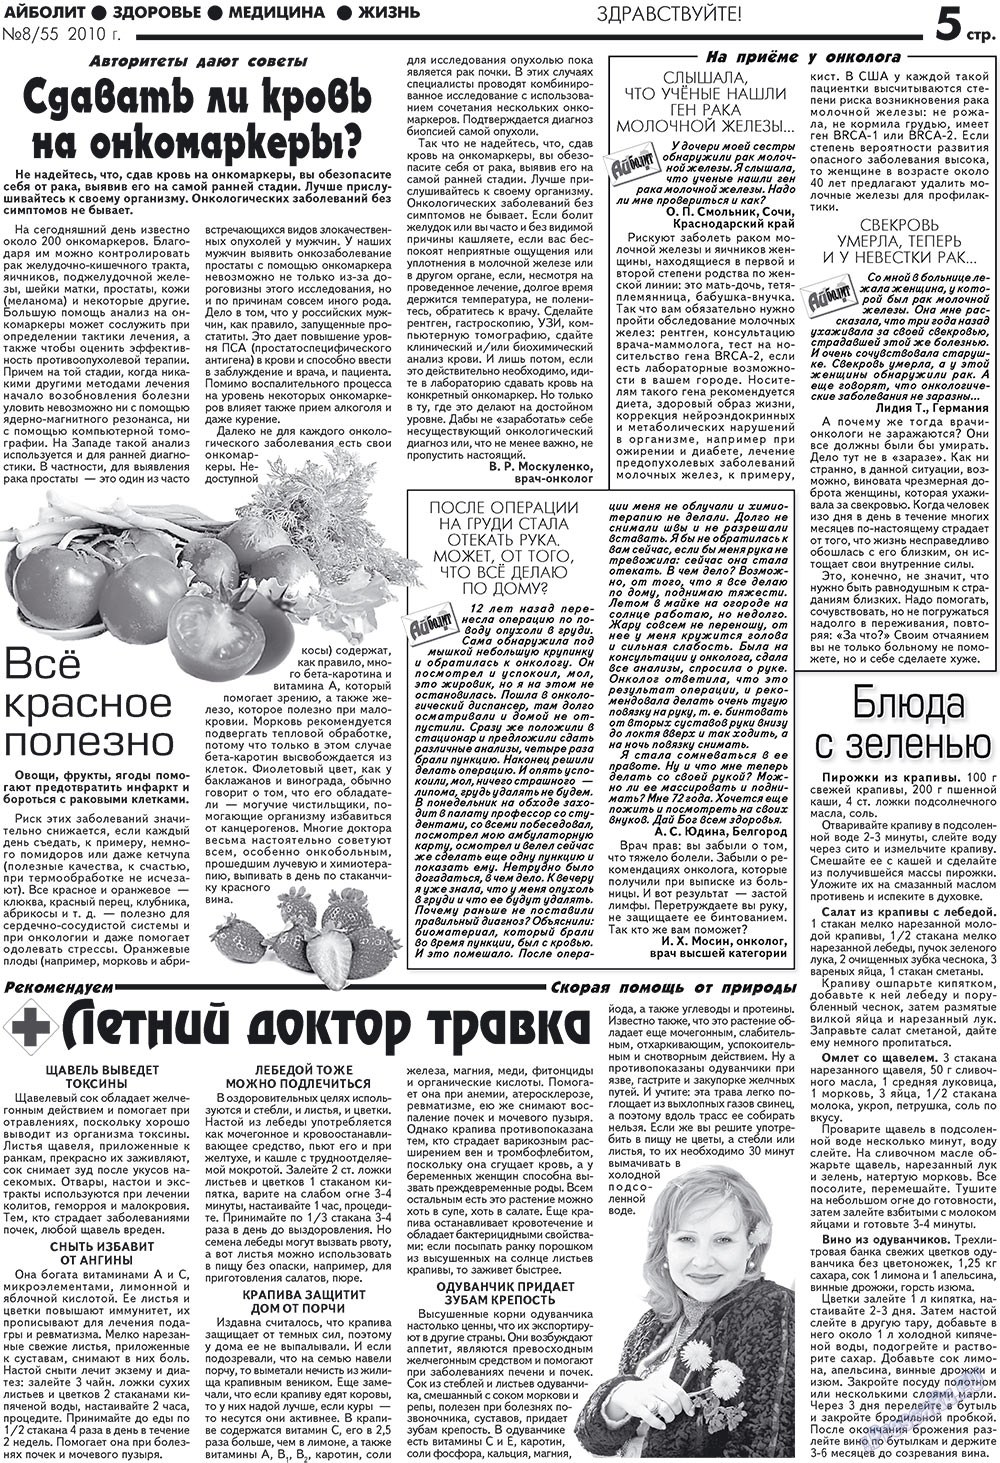 АйБолит, газета. 2010 №8 стр.5